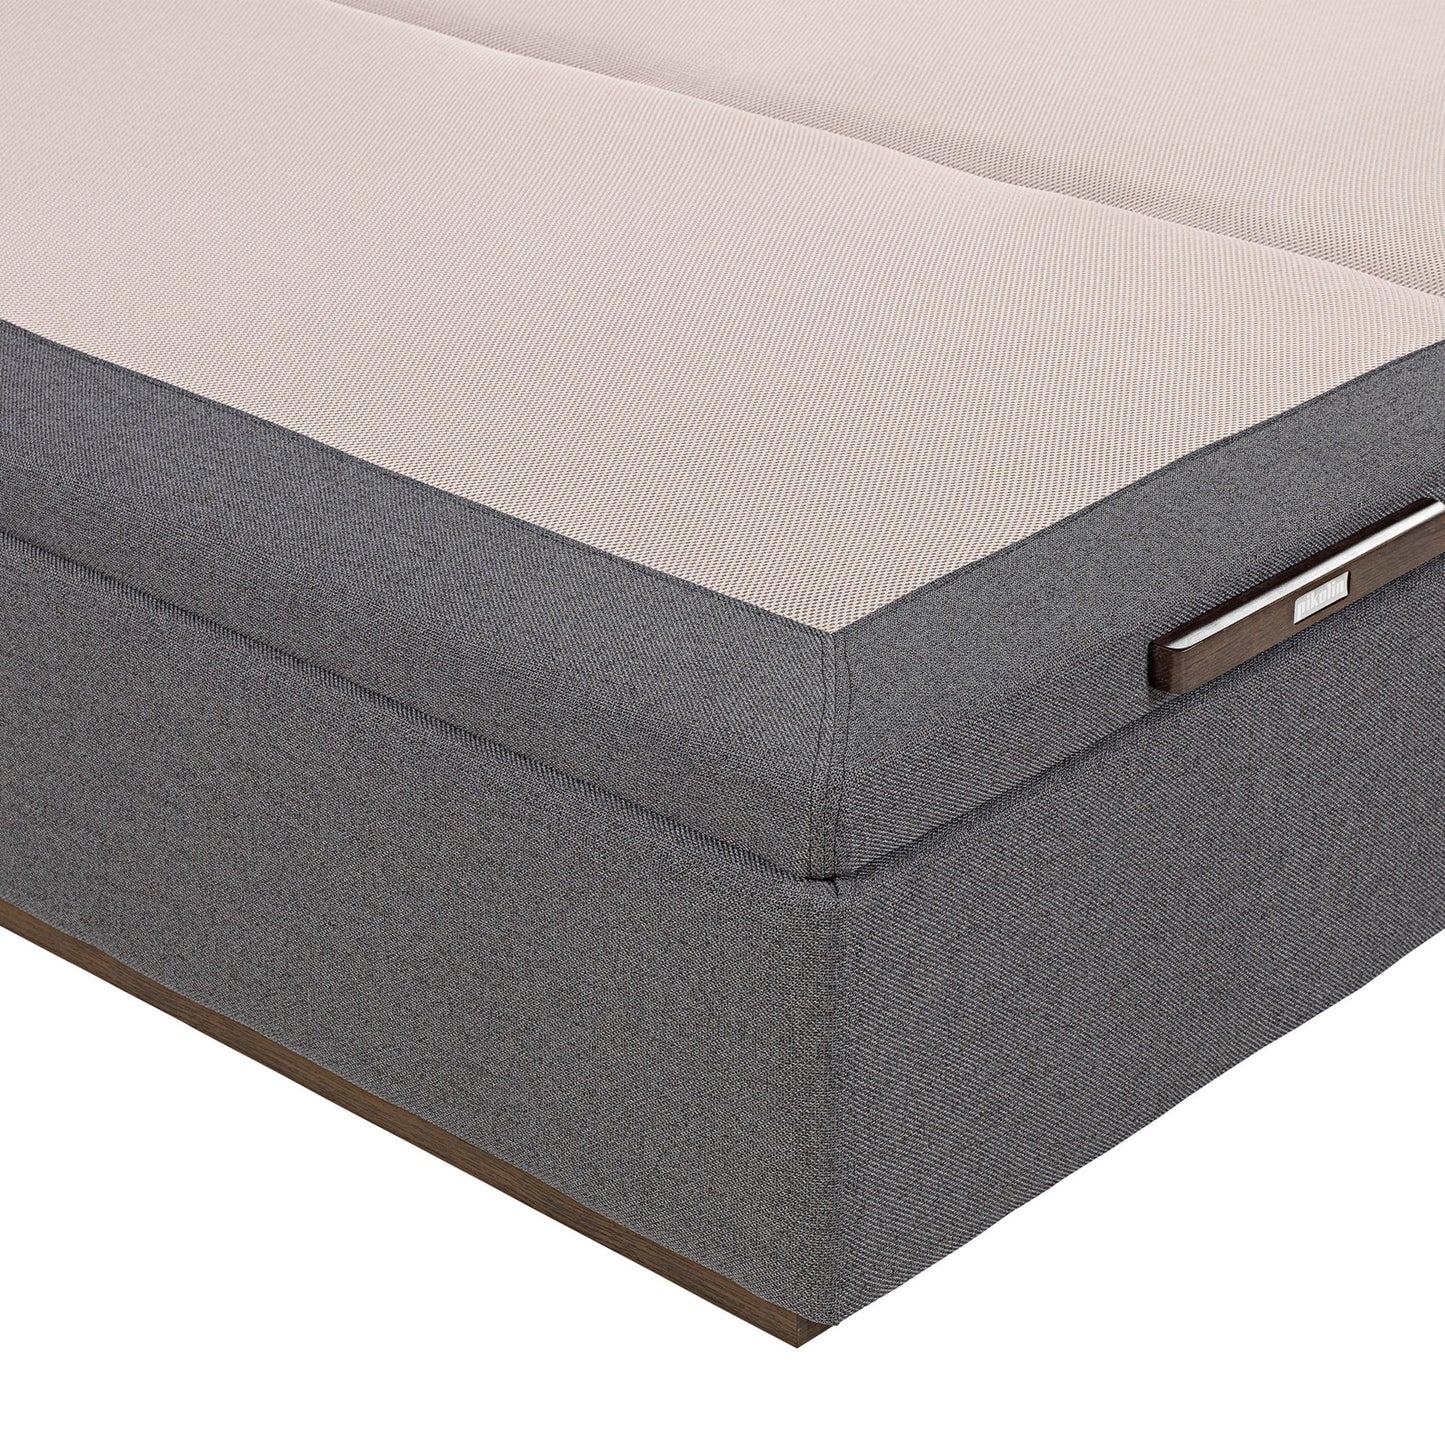 Canapé abatible de tapa doble de color piombo - TEXTIL - 140x200